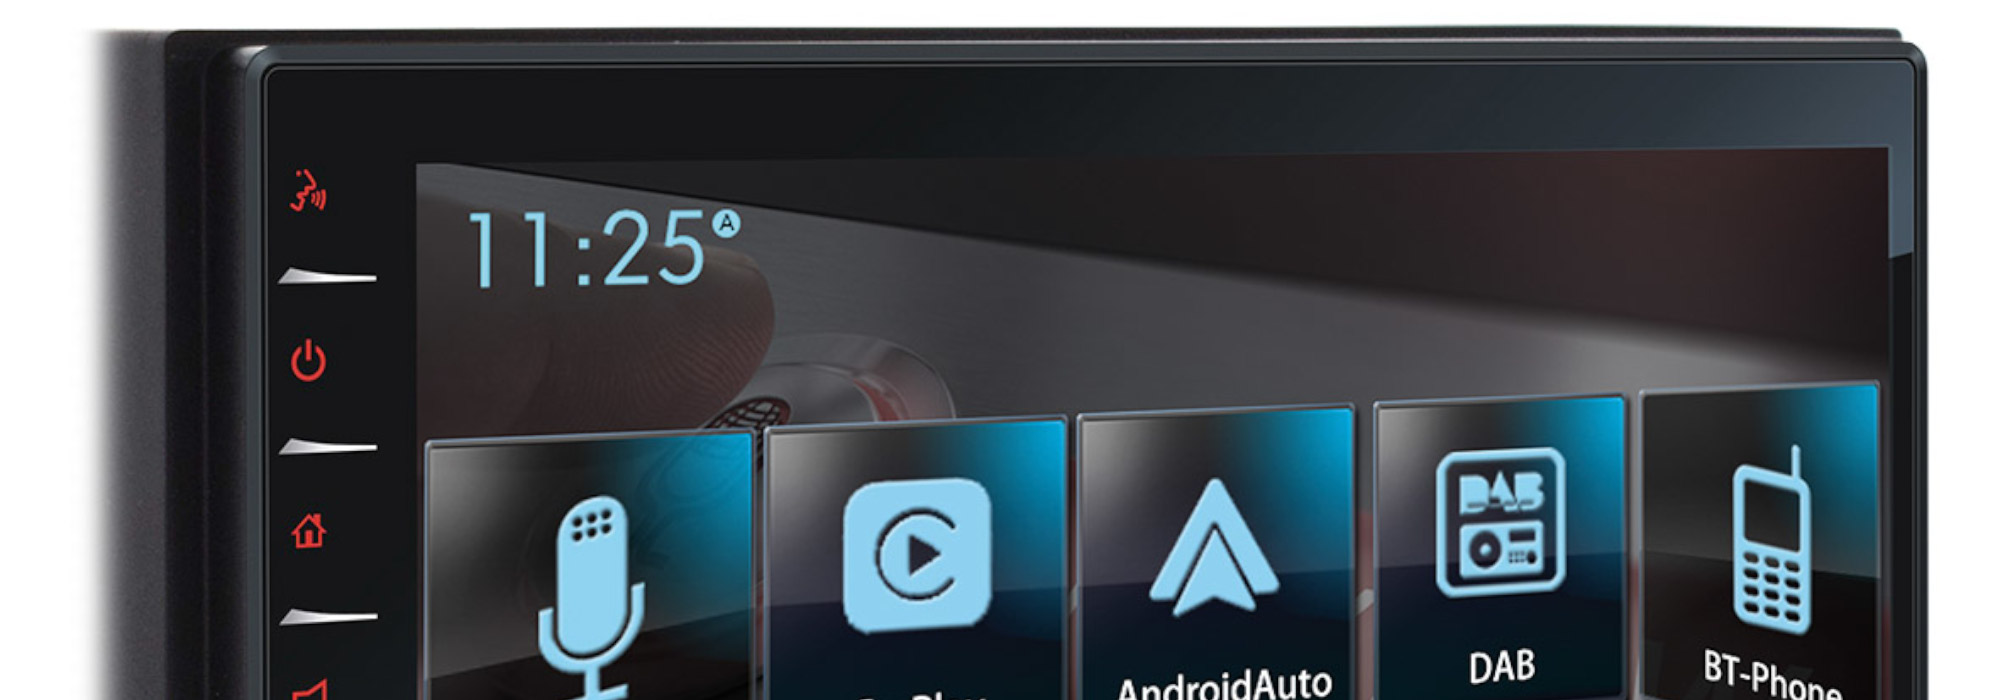 T-CPA70 DAB, het nieuwe multimediasysteem van Teleco: 6,8 inch touchscreen voor informatie en entertainment